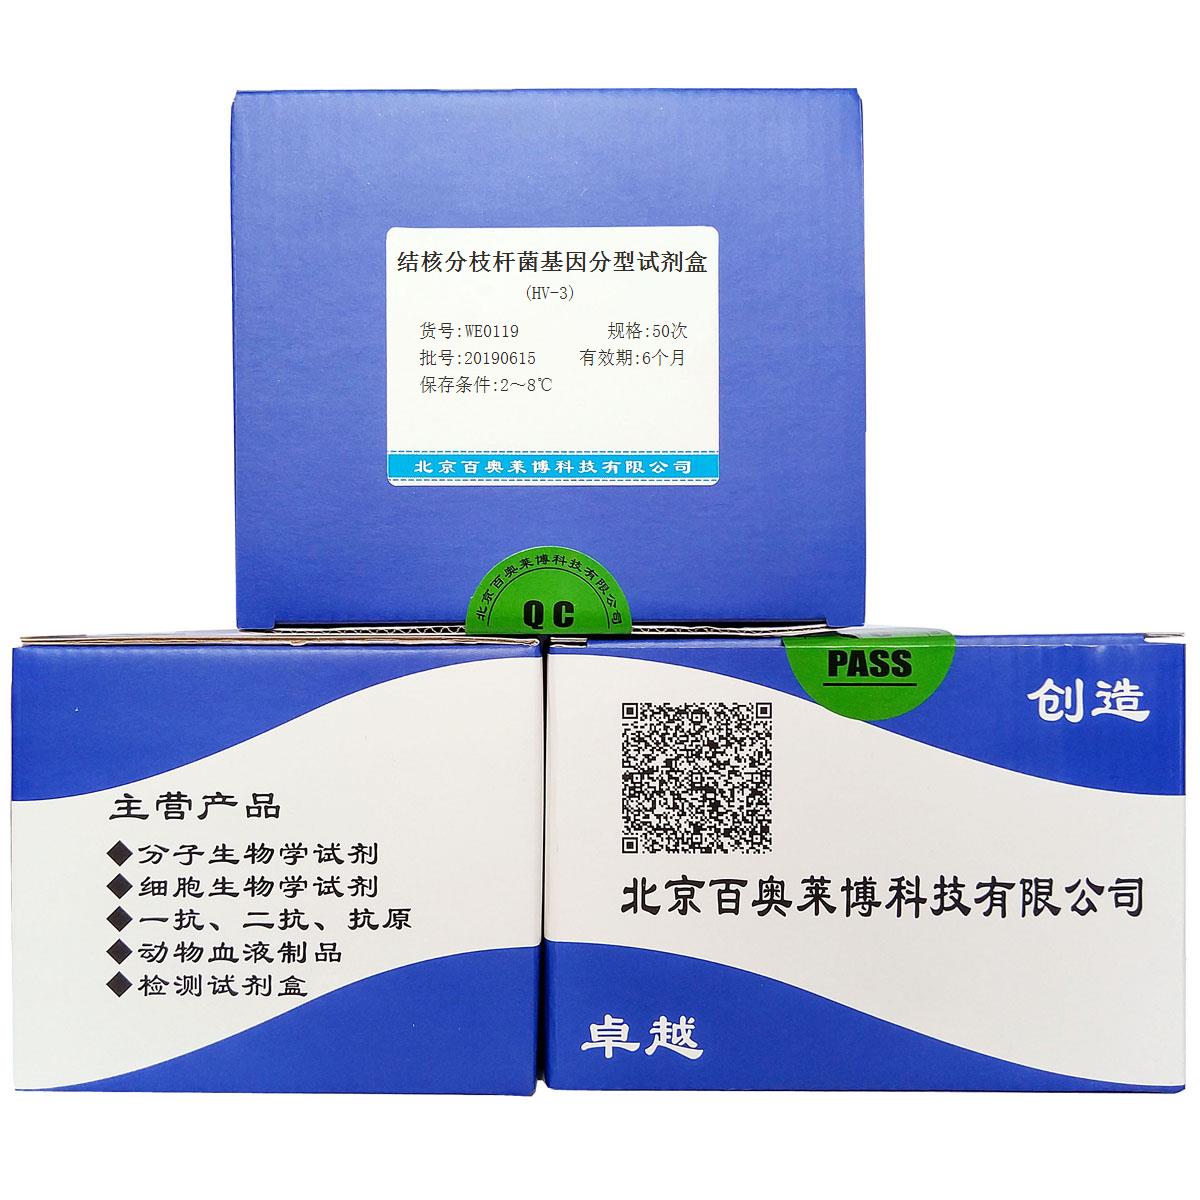 结核分枝杆菌基因分型试剂盒(HV-3)北京品牌